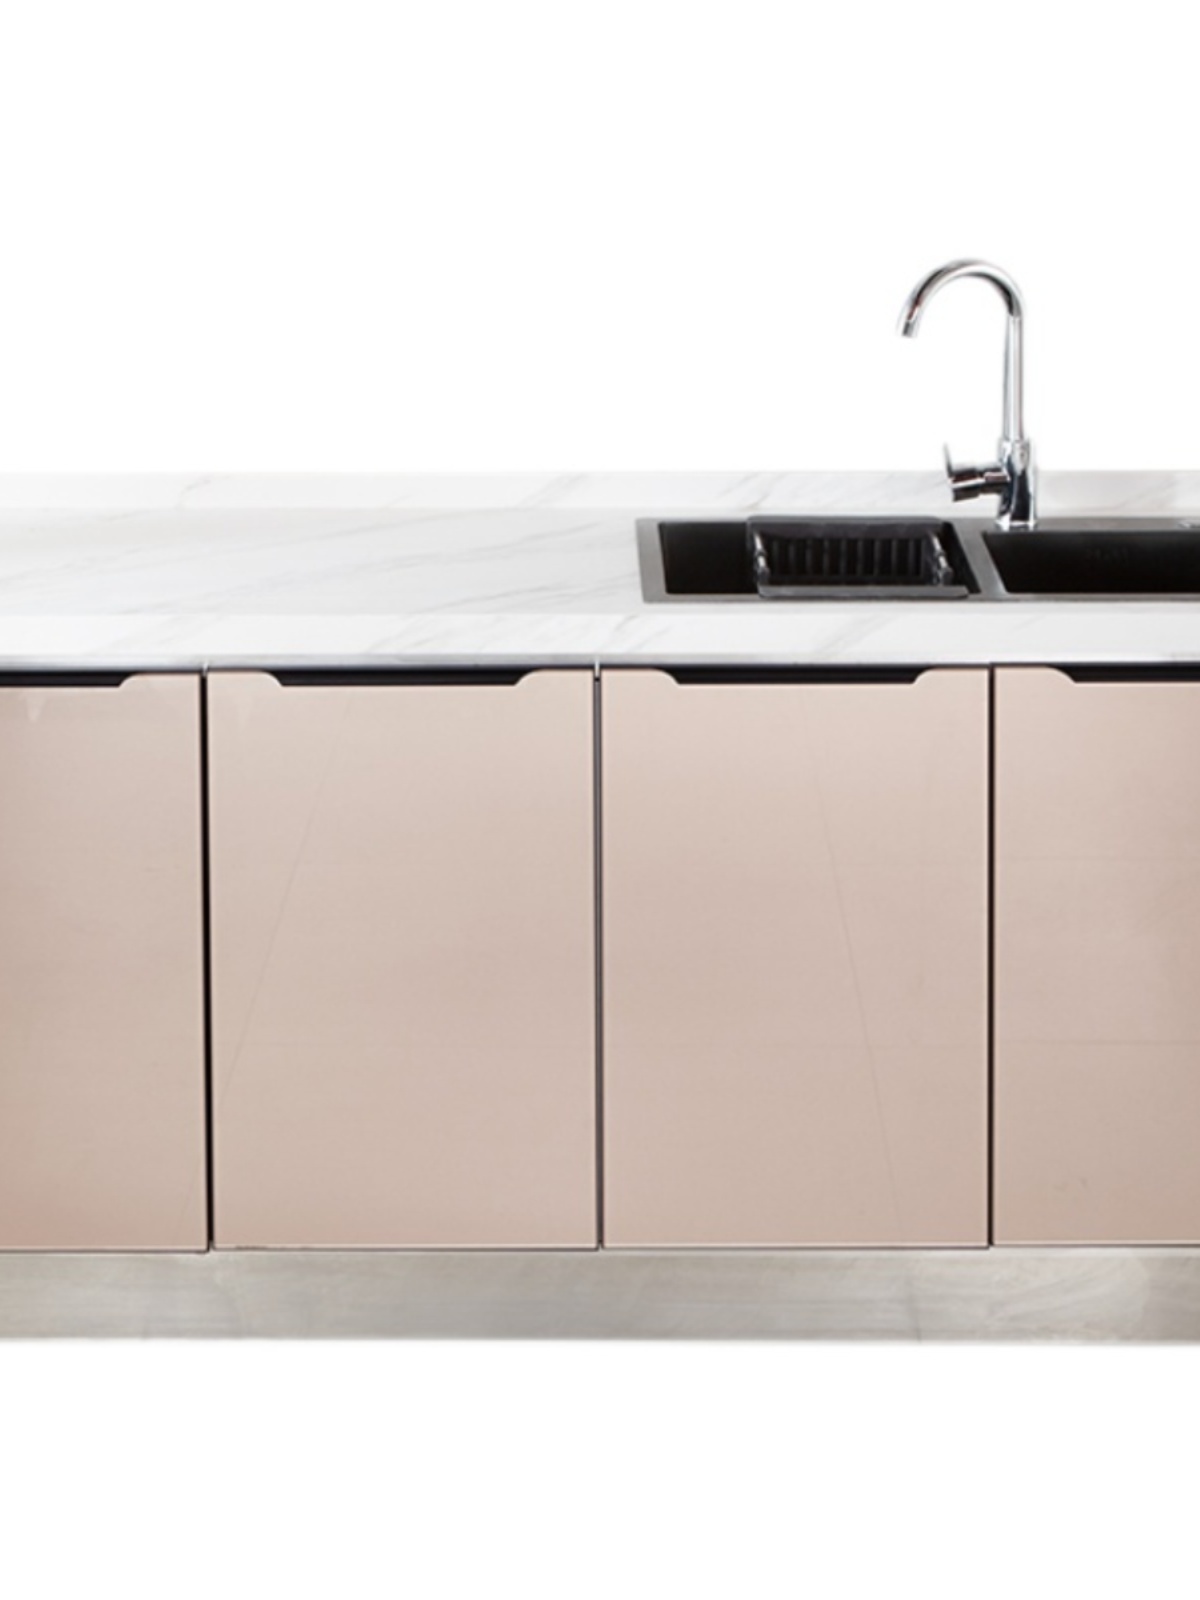 新品厨房橱柜家用大理石岩板橱柜水槽柜厨房一体柜组合厨房柜子灶